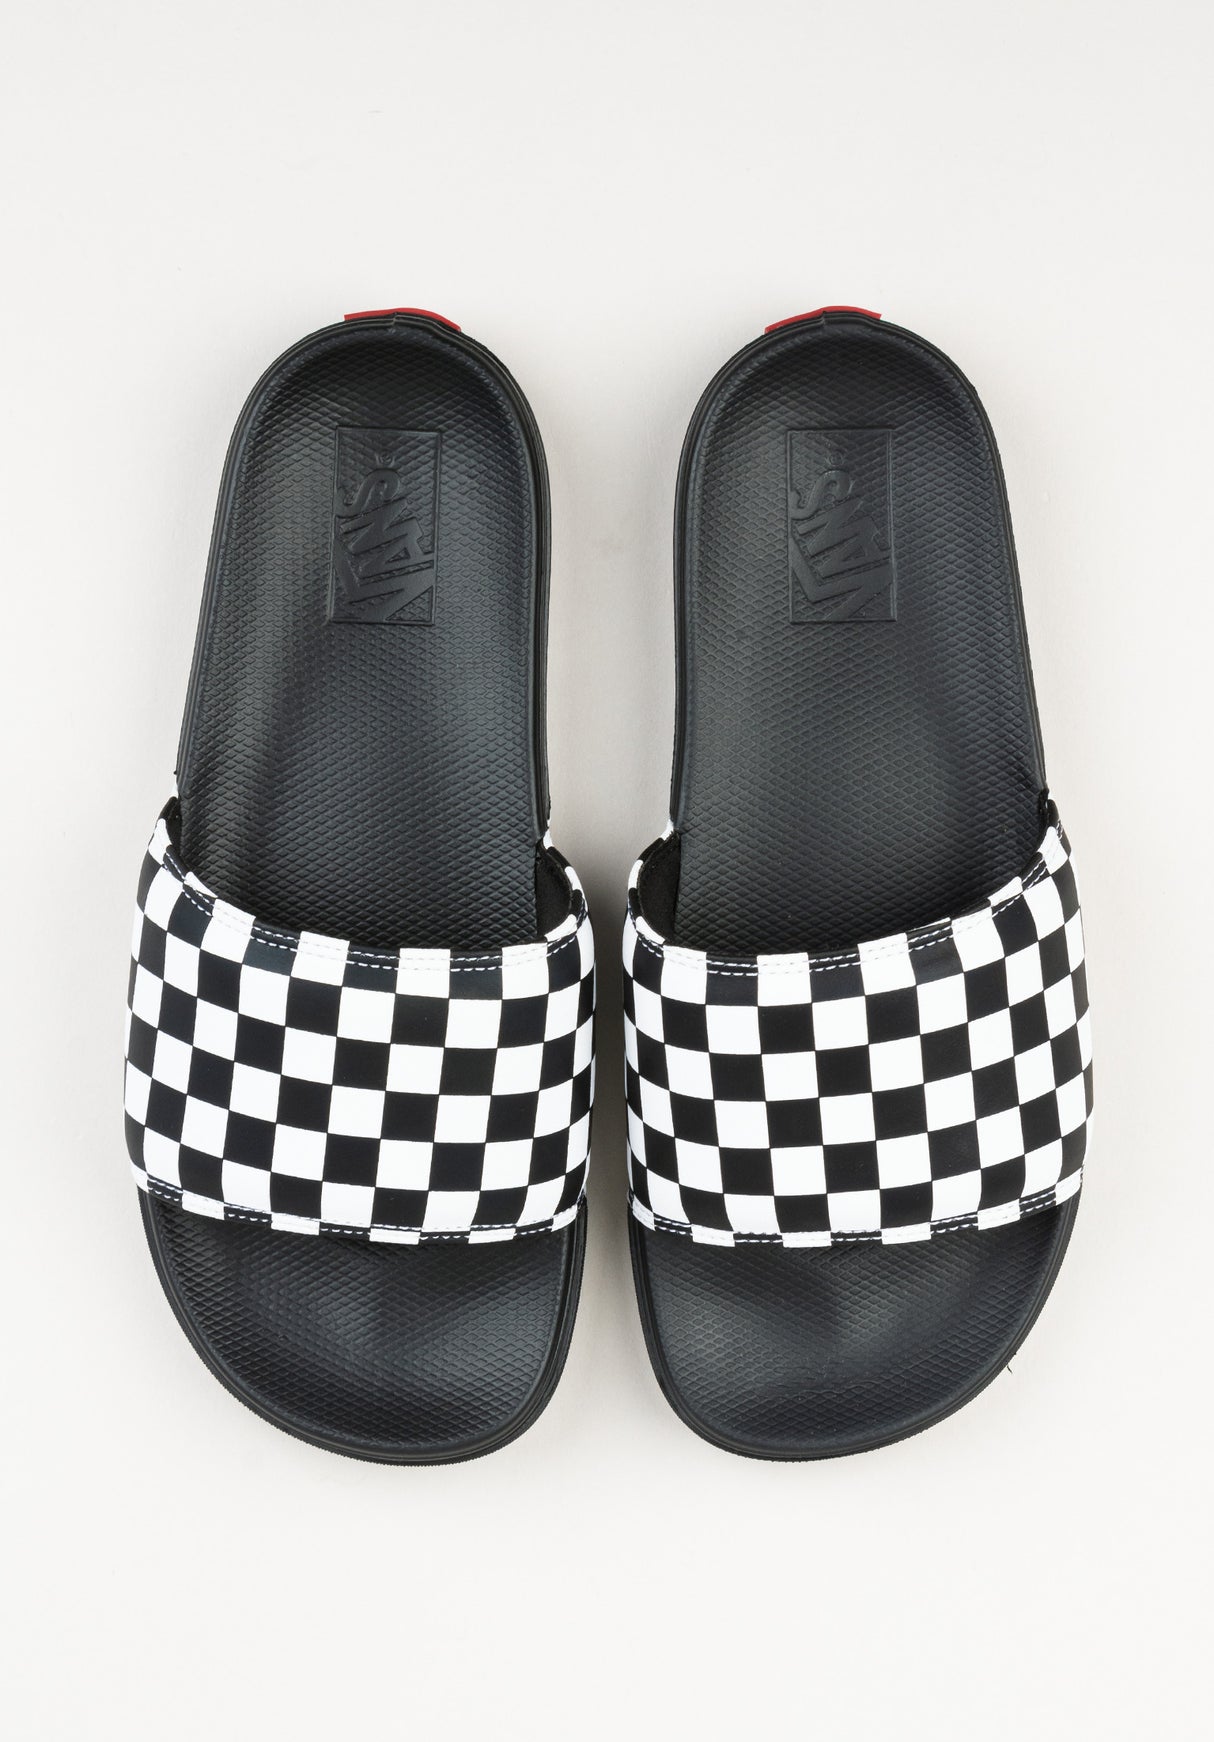 La Costa Slide-On checkerboard black-white Close-Up2